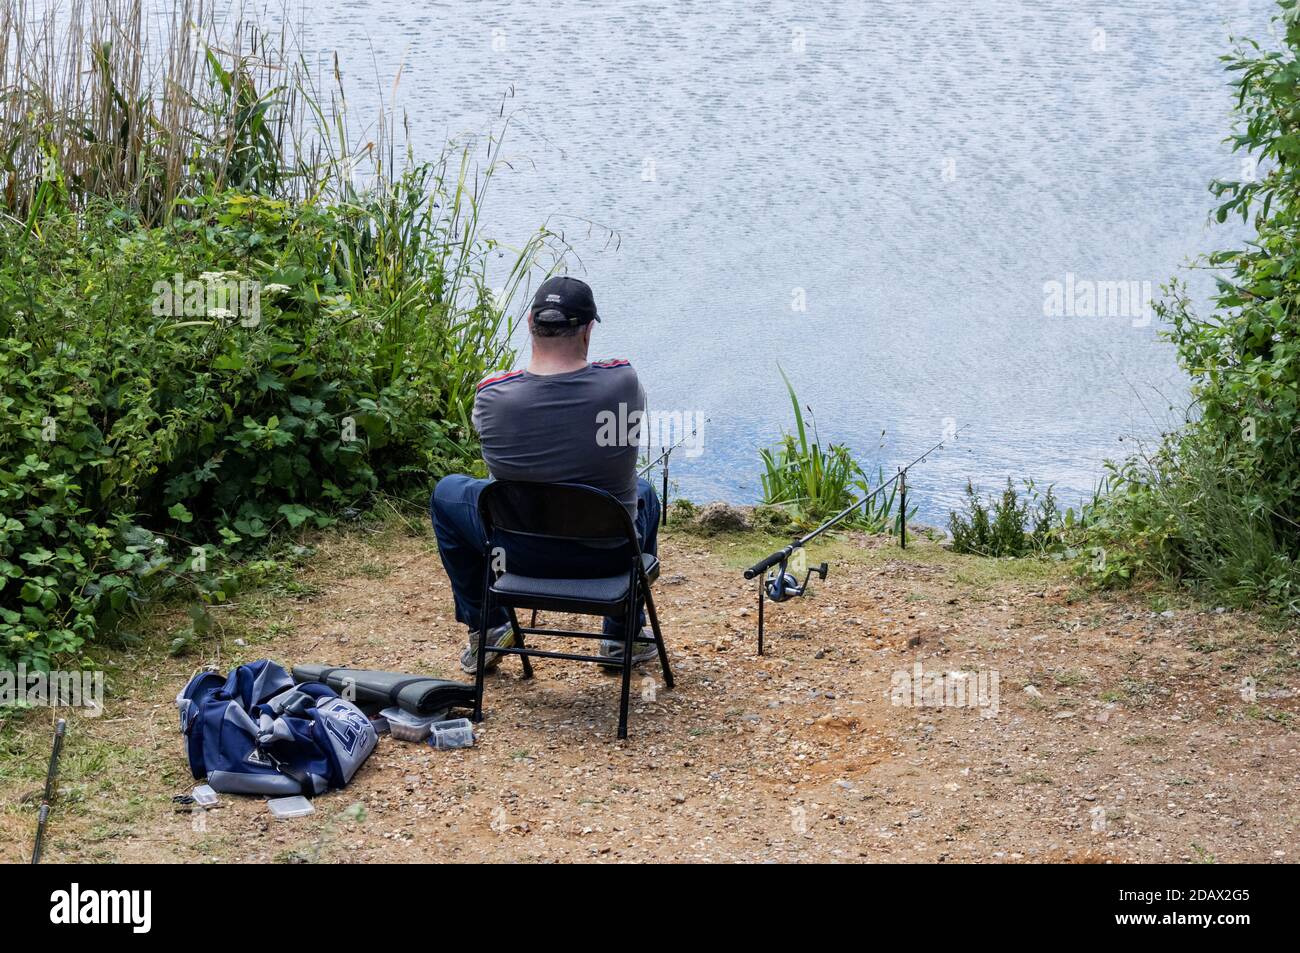 La pêche sur un lac de l'homme Banque D'Images